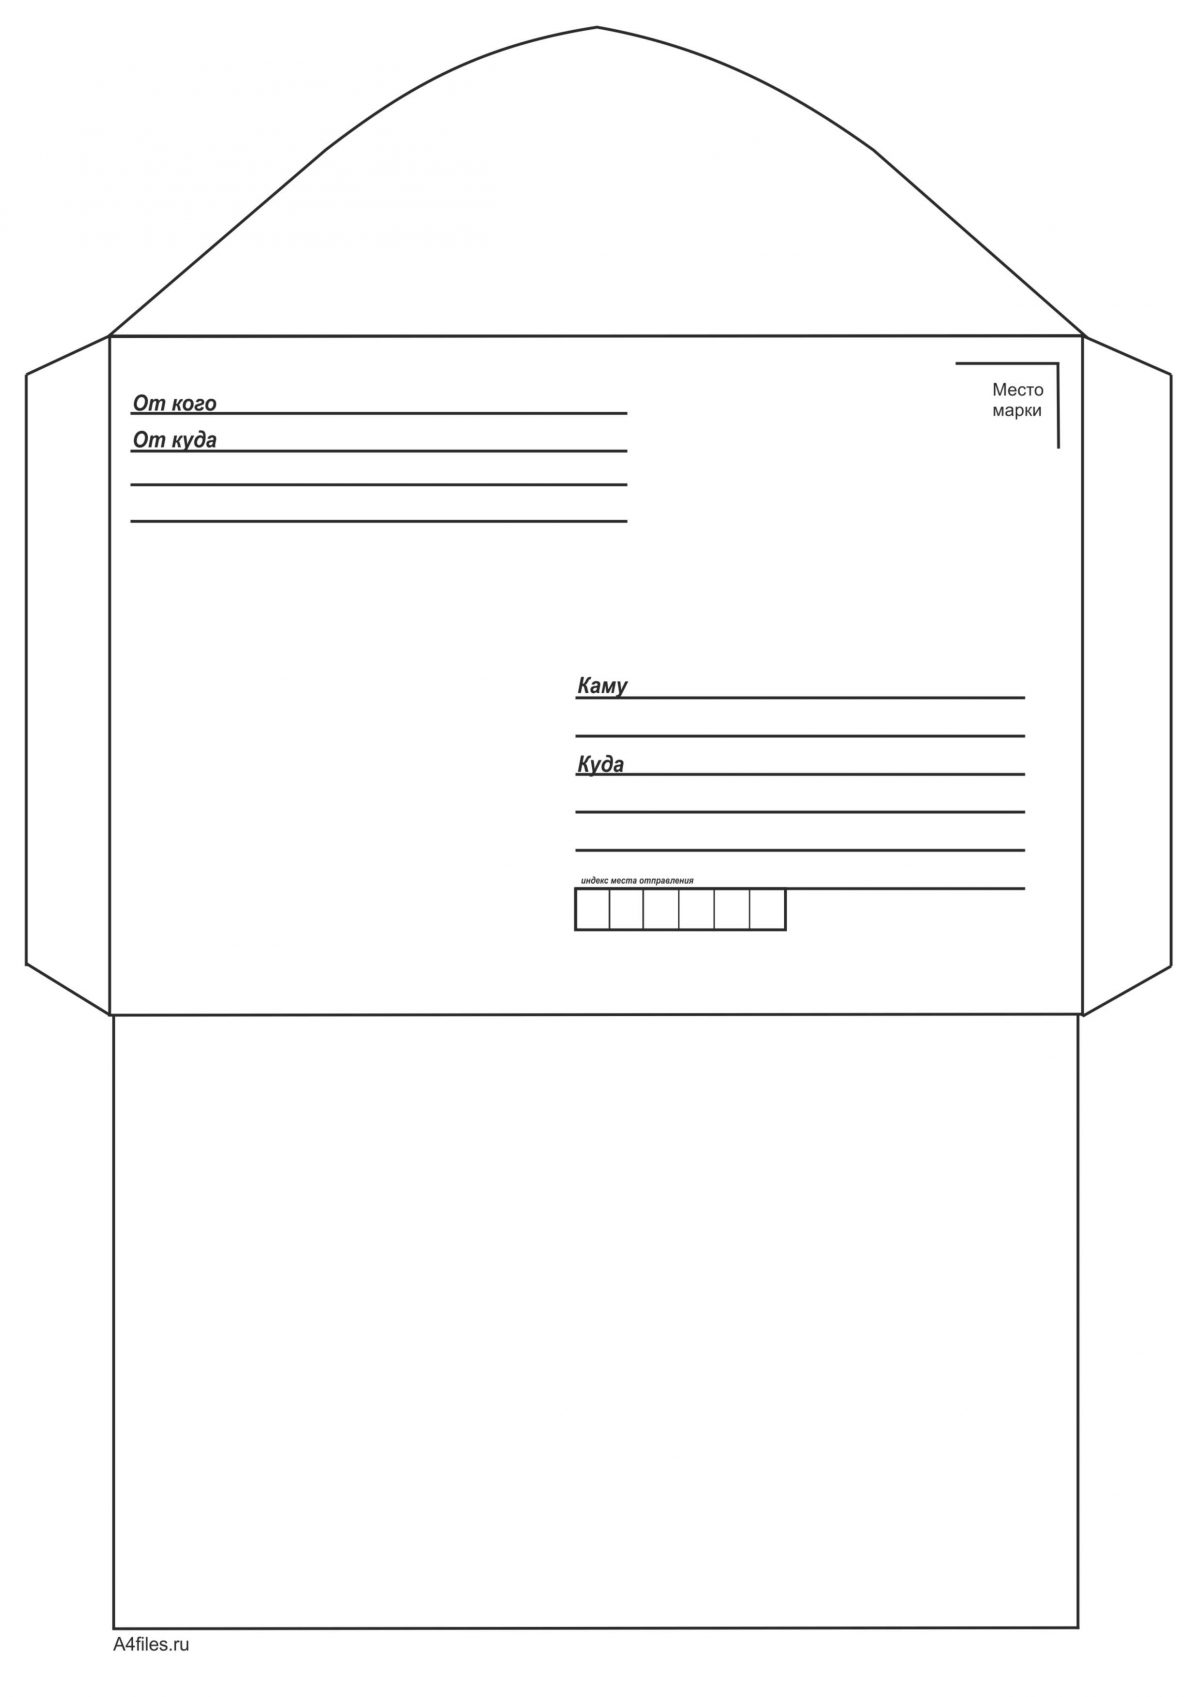 CorelDRAW шаблон конверта для создания профессиональных документов